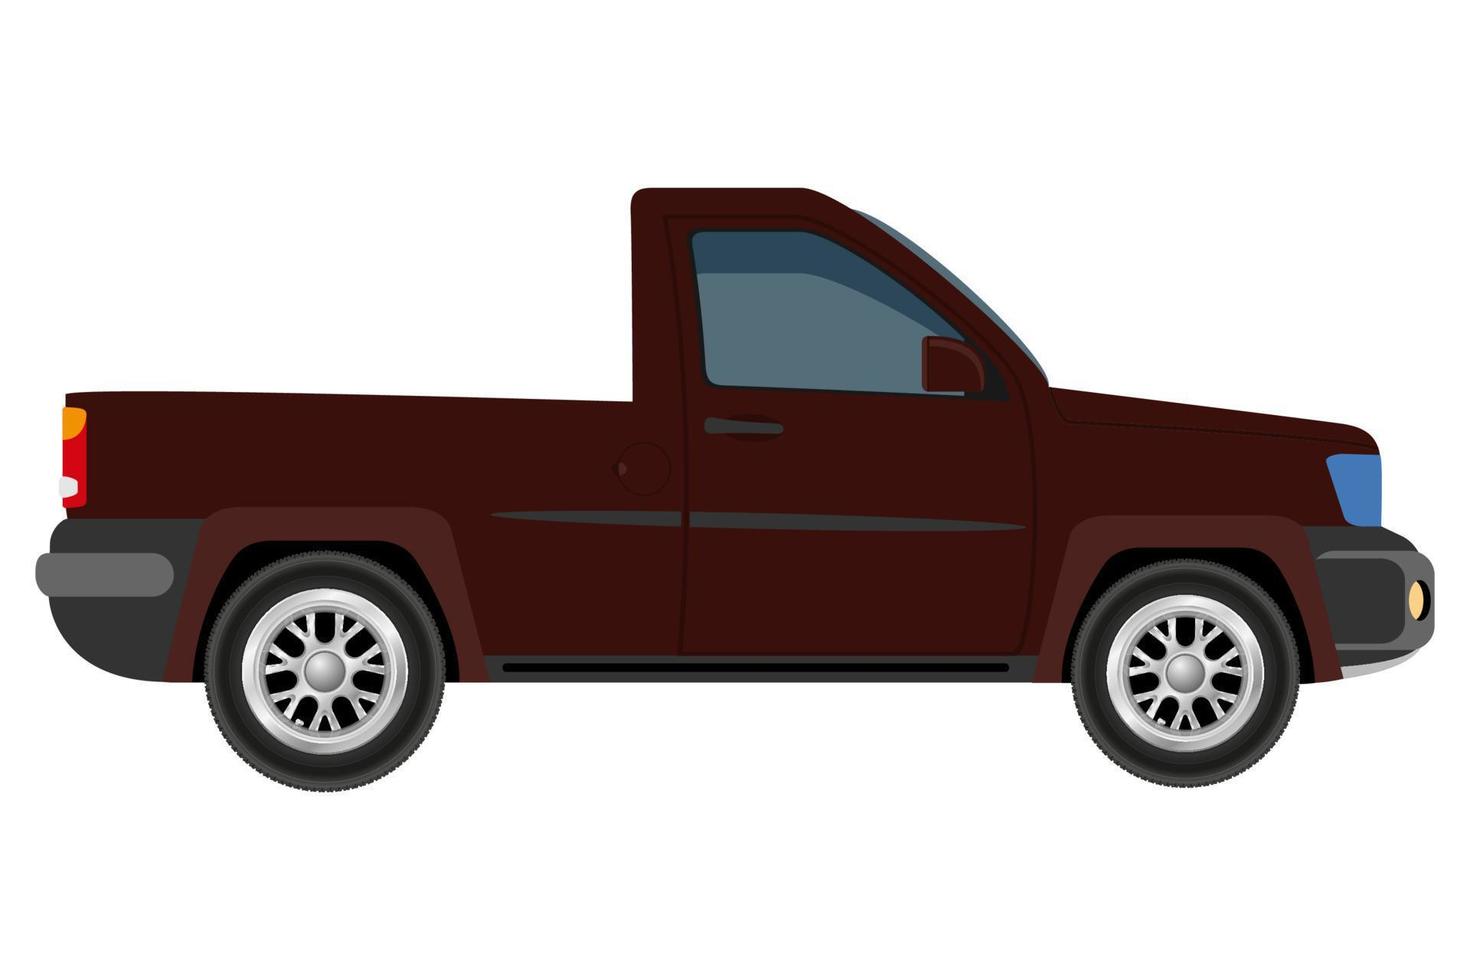 transport pour le transport de marchandises ou de passagers icône plate illustration vectorielle isolée sur fond blanc vecteur